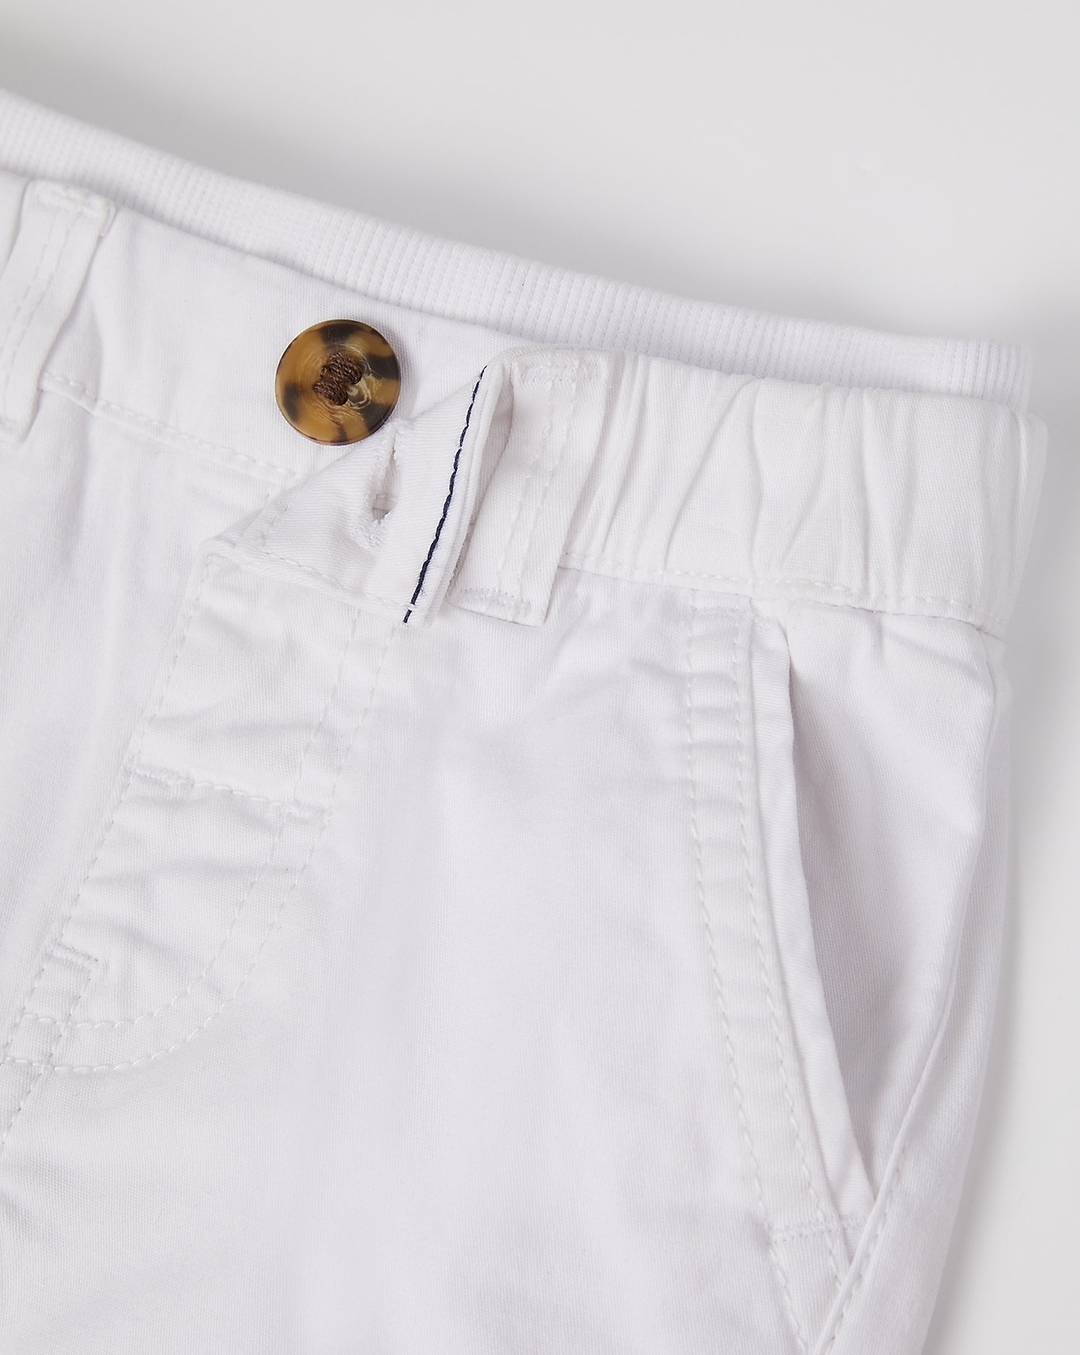 Buy Men's Cotton Linen Casual Wear Slim Fit Pants|Cottonworld